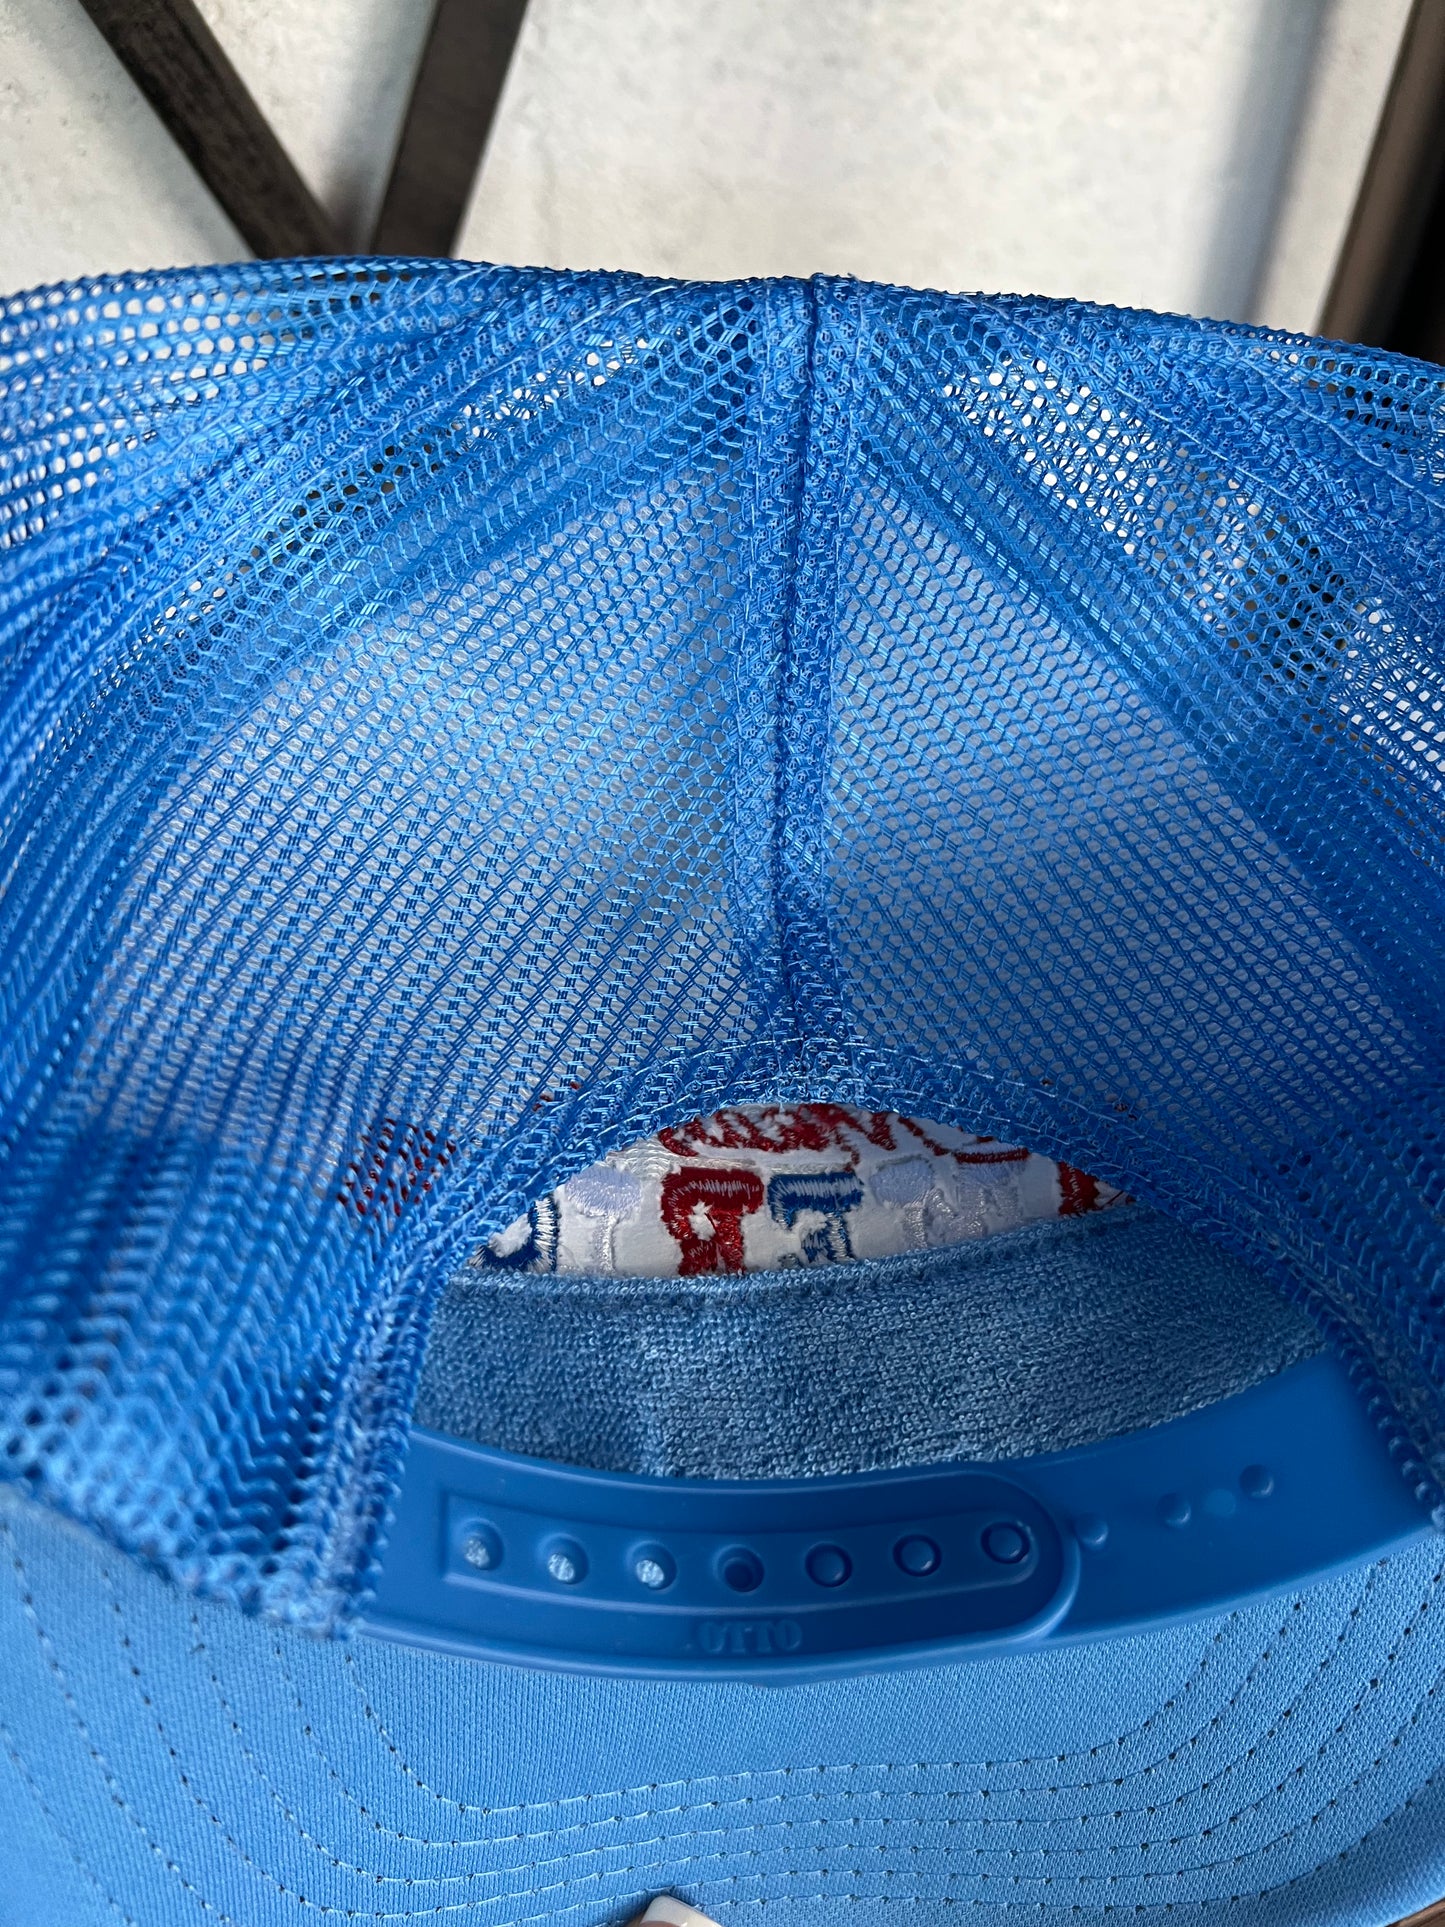 Made in America Foam Trucker Hat (Cobalt Blue)